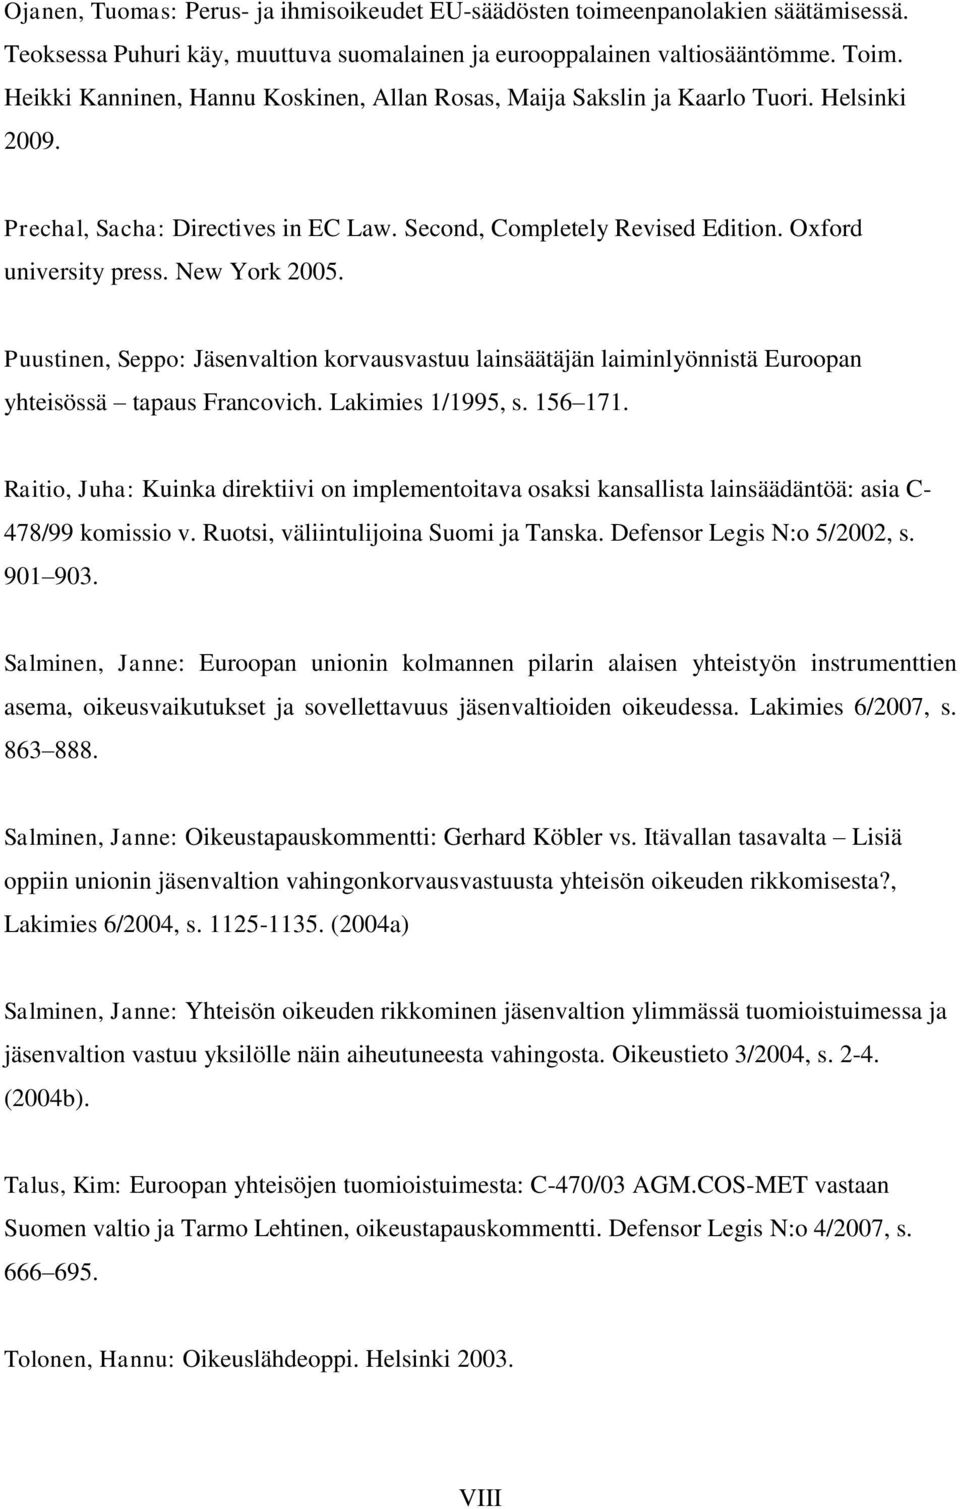 New York 2005. Puustinen, Seppo: Jäsenvaltion korvausvastuu lainsäätäjän laiminlyönnistä Euroopan yhteisössä tapaus Francovich. Lakimies 1/1995, s. 156 171.